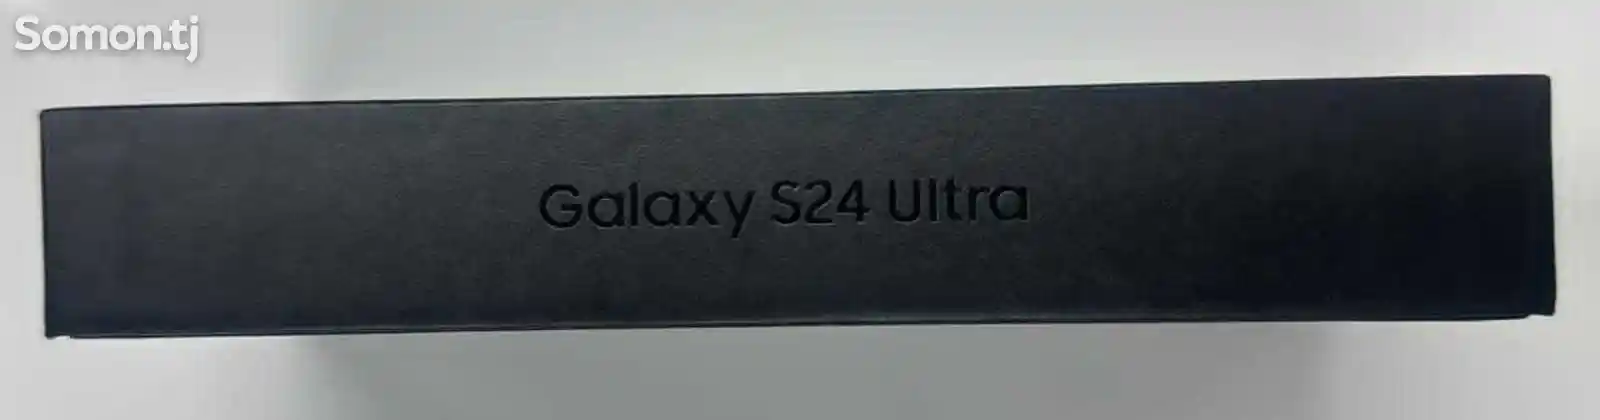 Samsung Galaxy s24 ultra-3